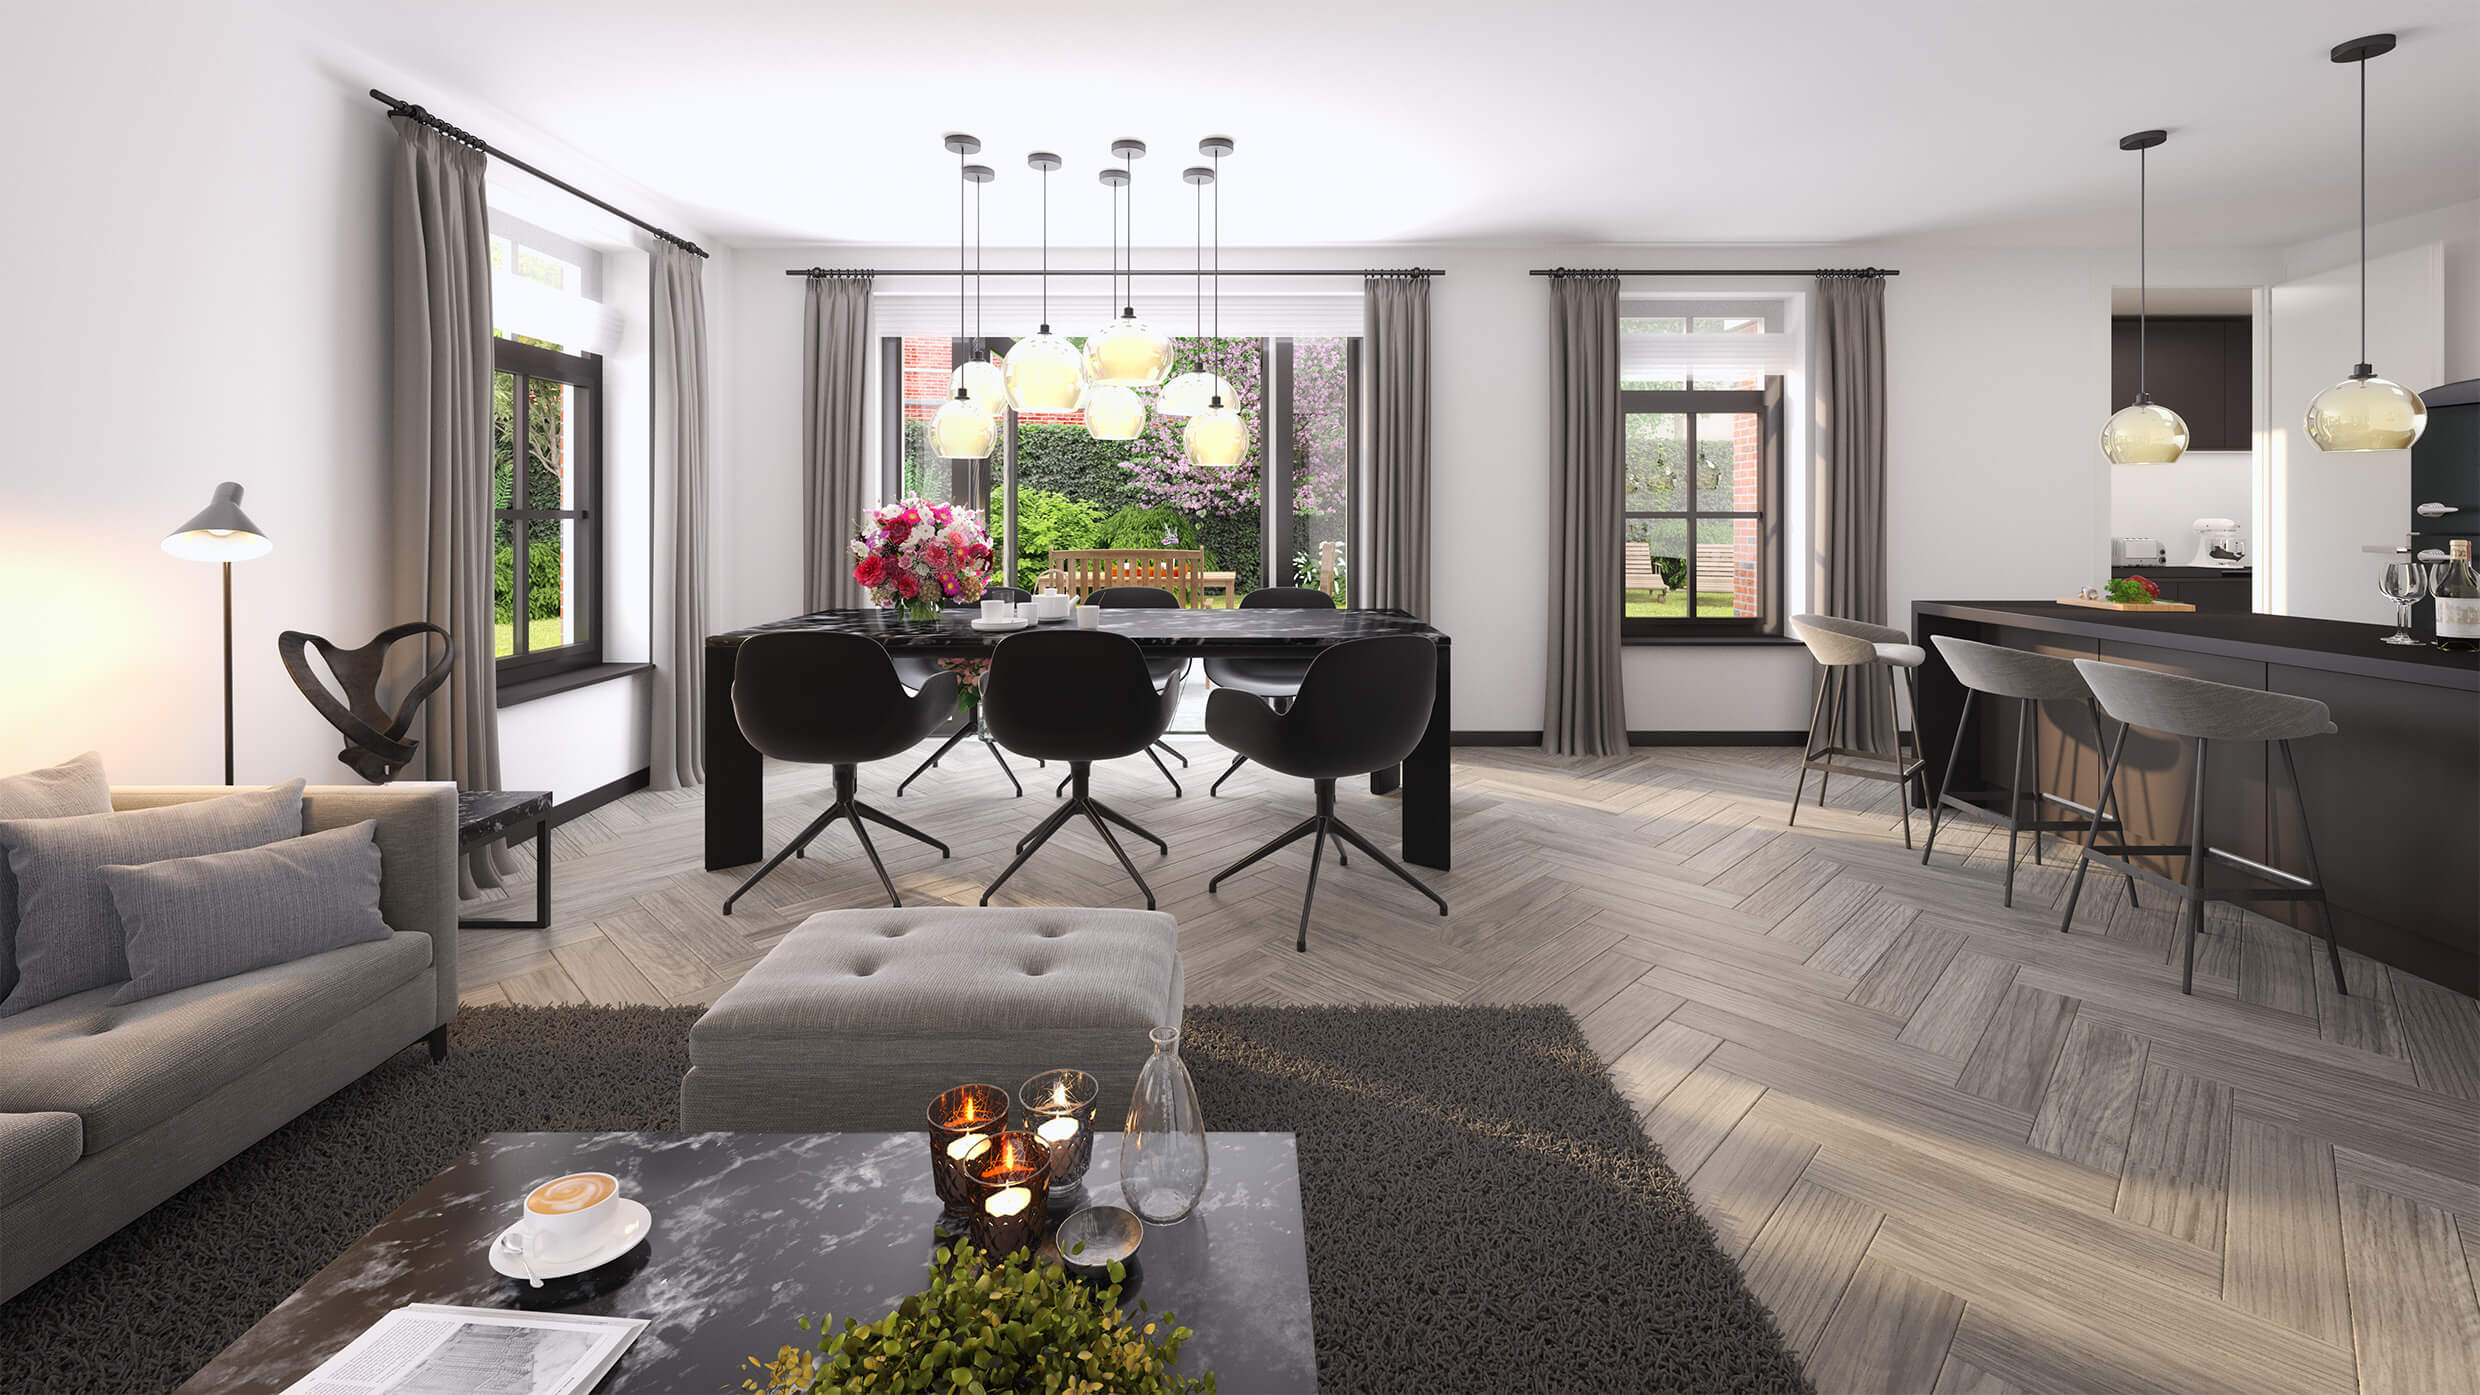 Interieurimpressie in modern klassieke style van een vrijstaande villa overzicht op woonkamer de eetkamer de keuken en de tuin.